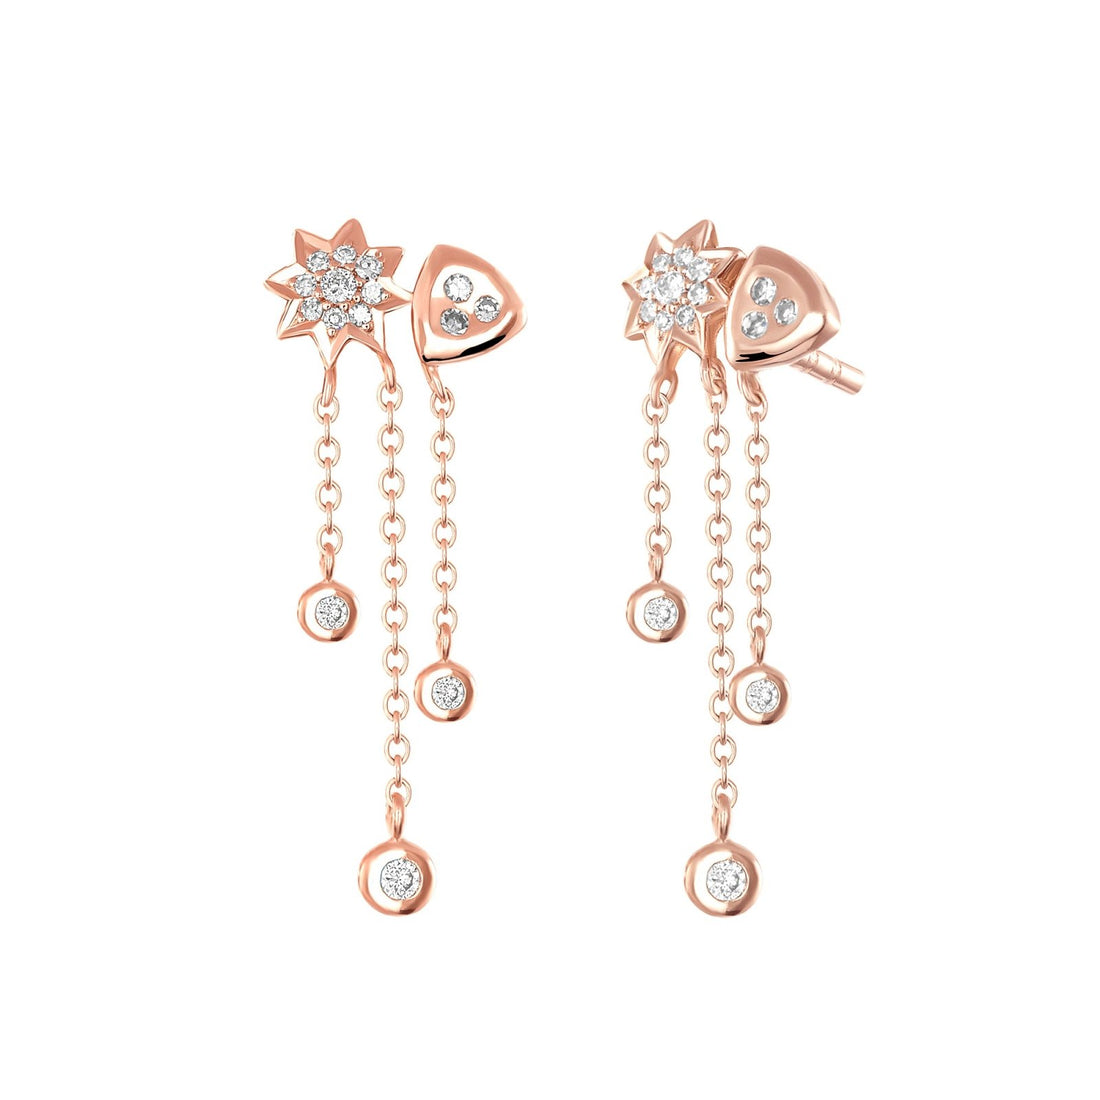 Tinker Bell - Ele Keats Jewelry